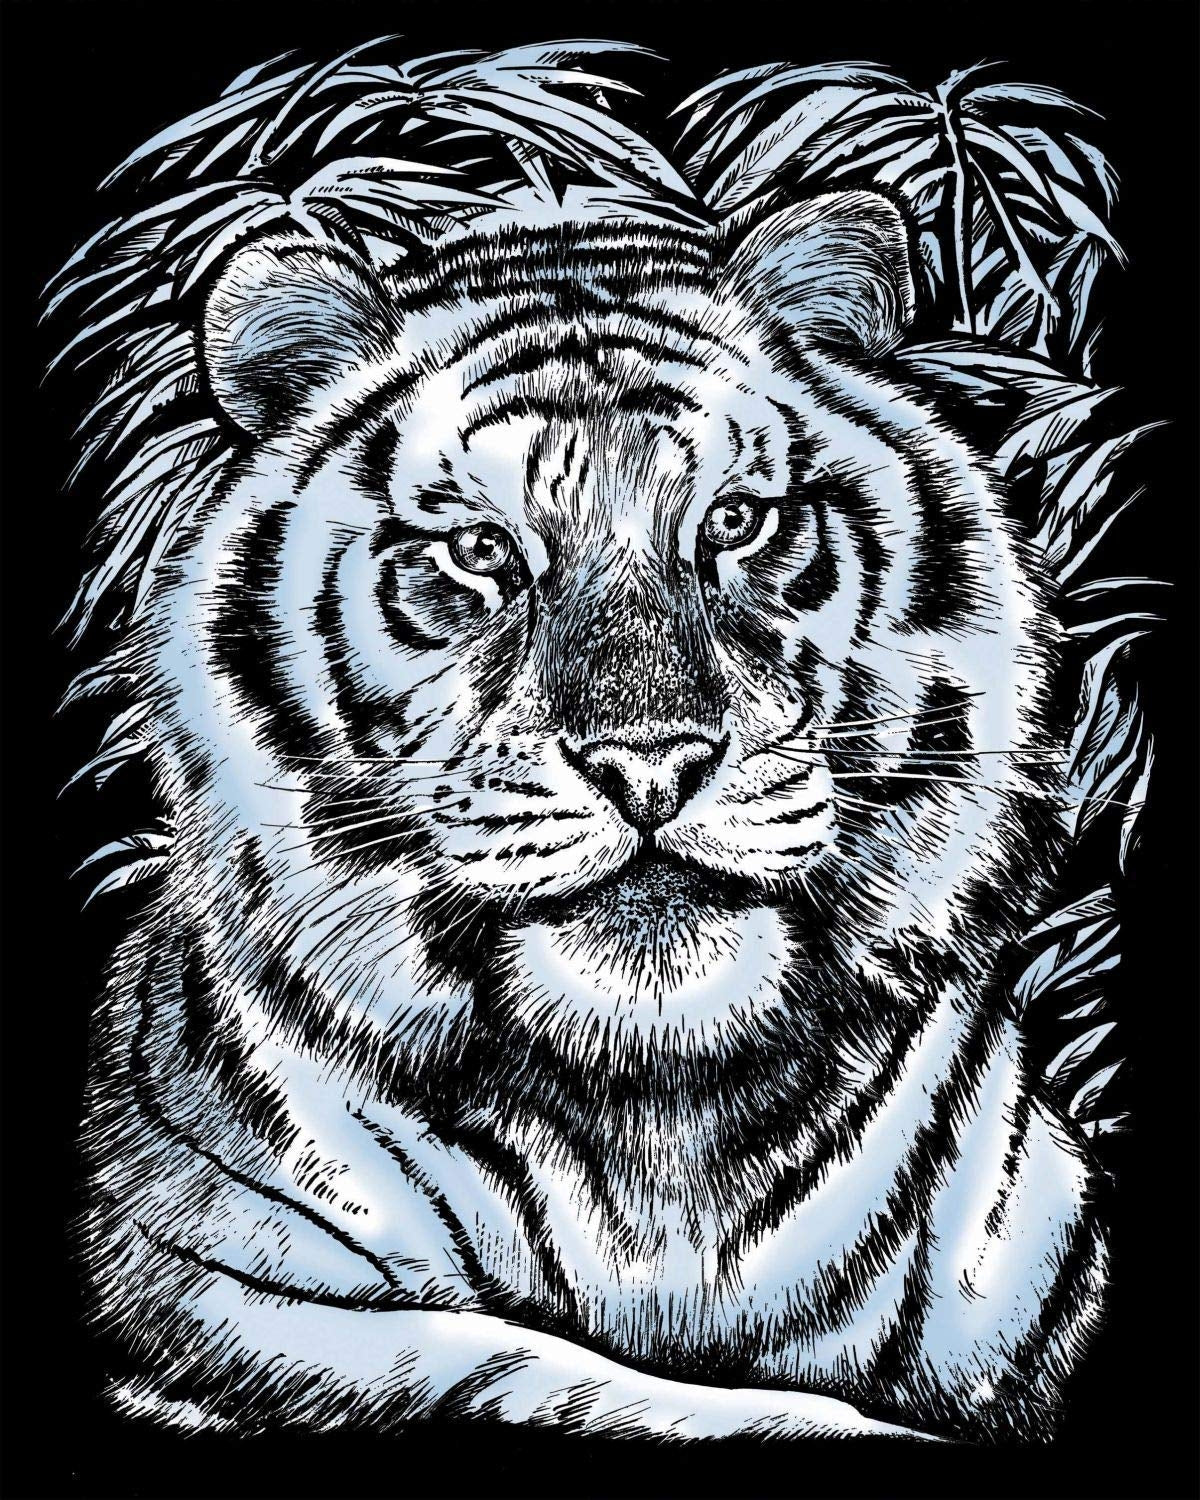 KSG - Foglio di raschietto - argento - tigre bianca